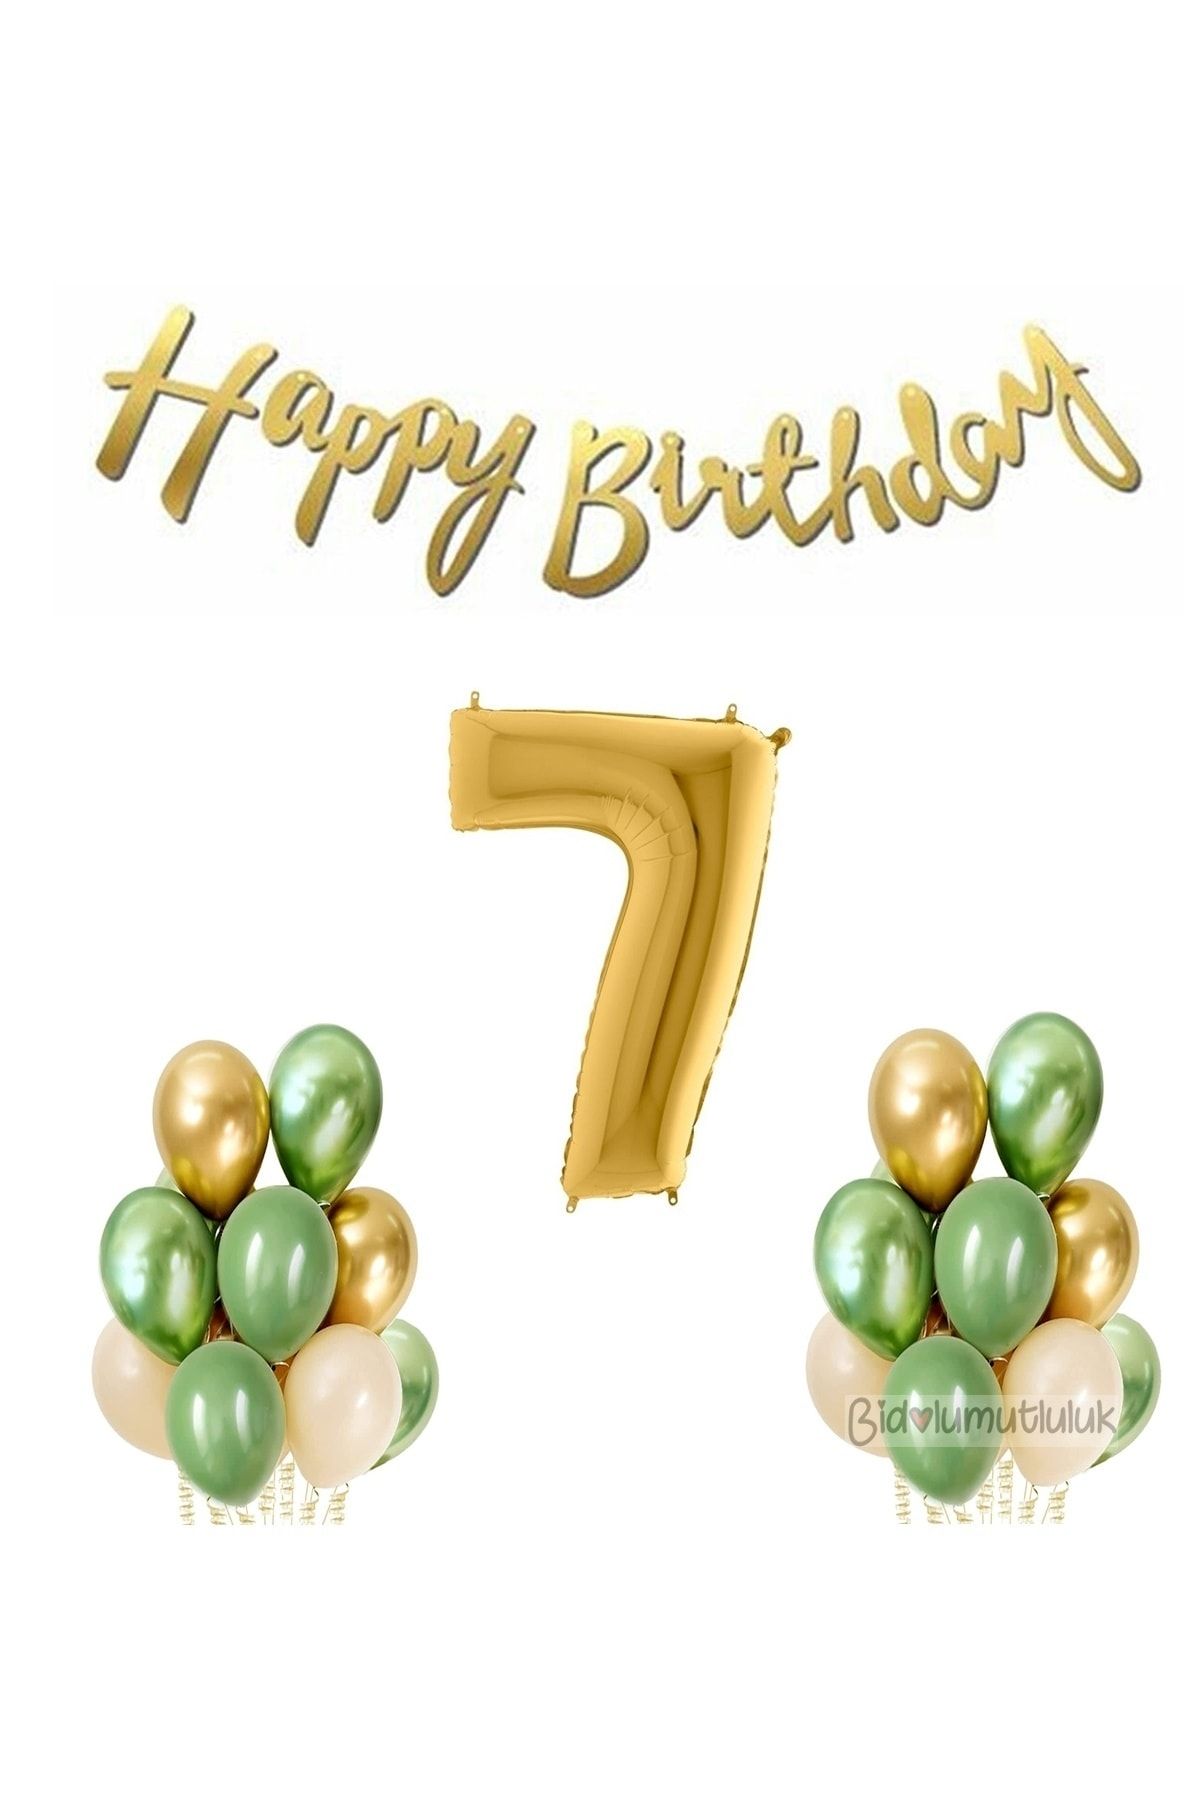 BİDOLUMUTLULUK Küf Yeşilli Balon Yaş Doğum Günü Seti